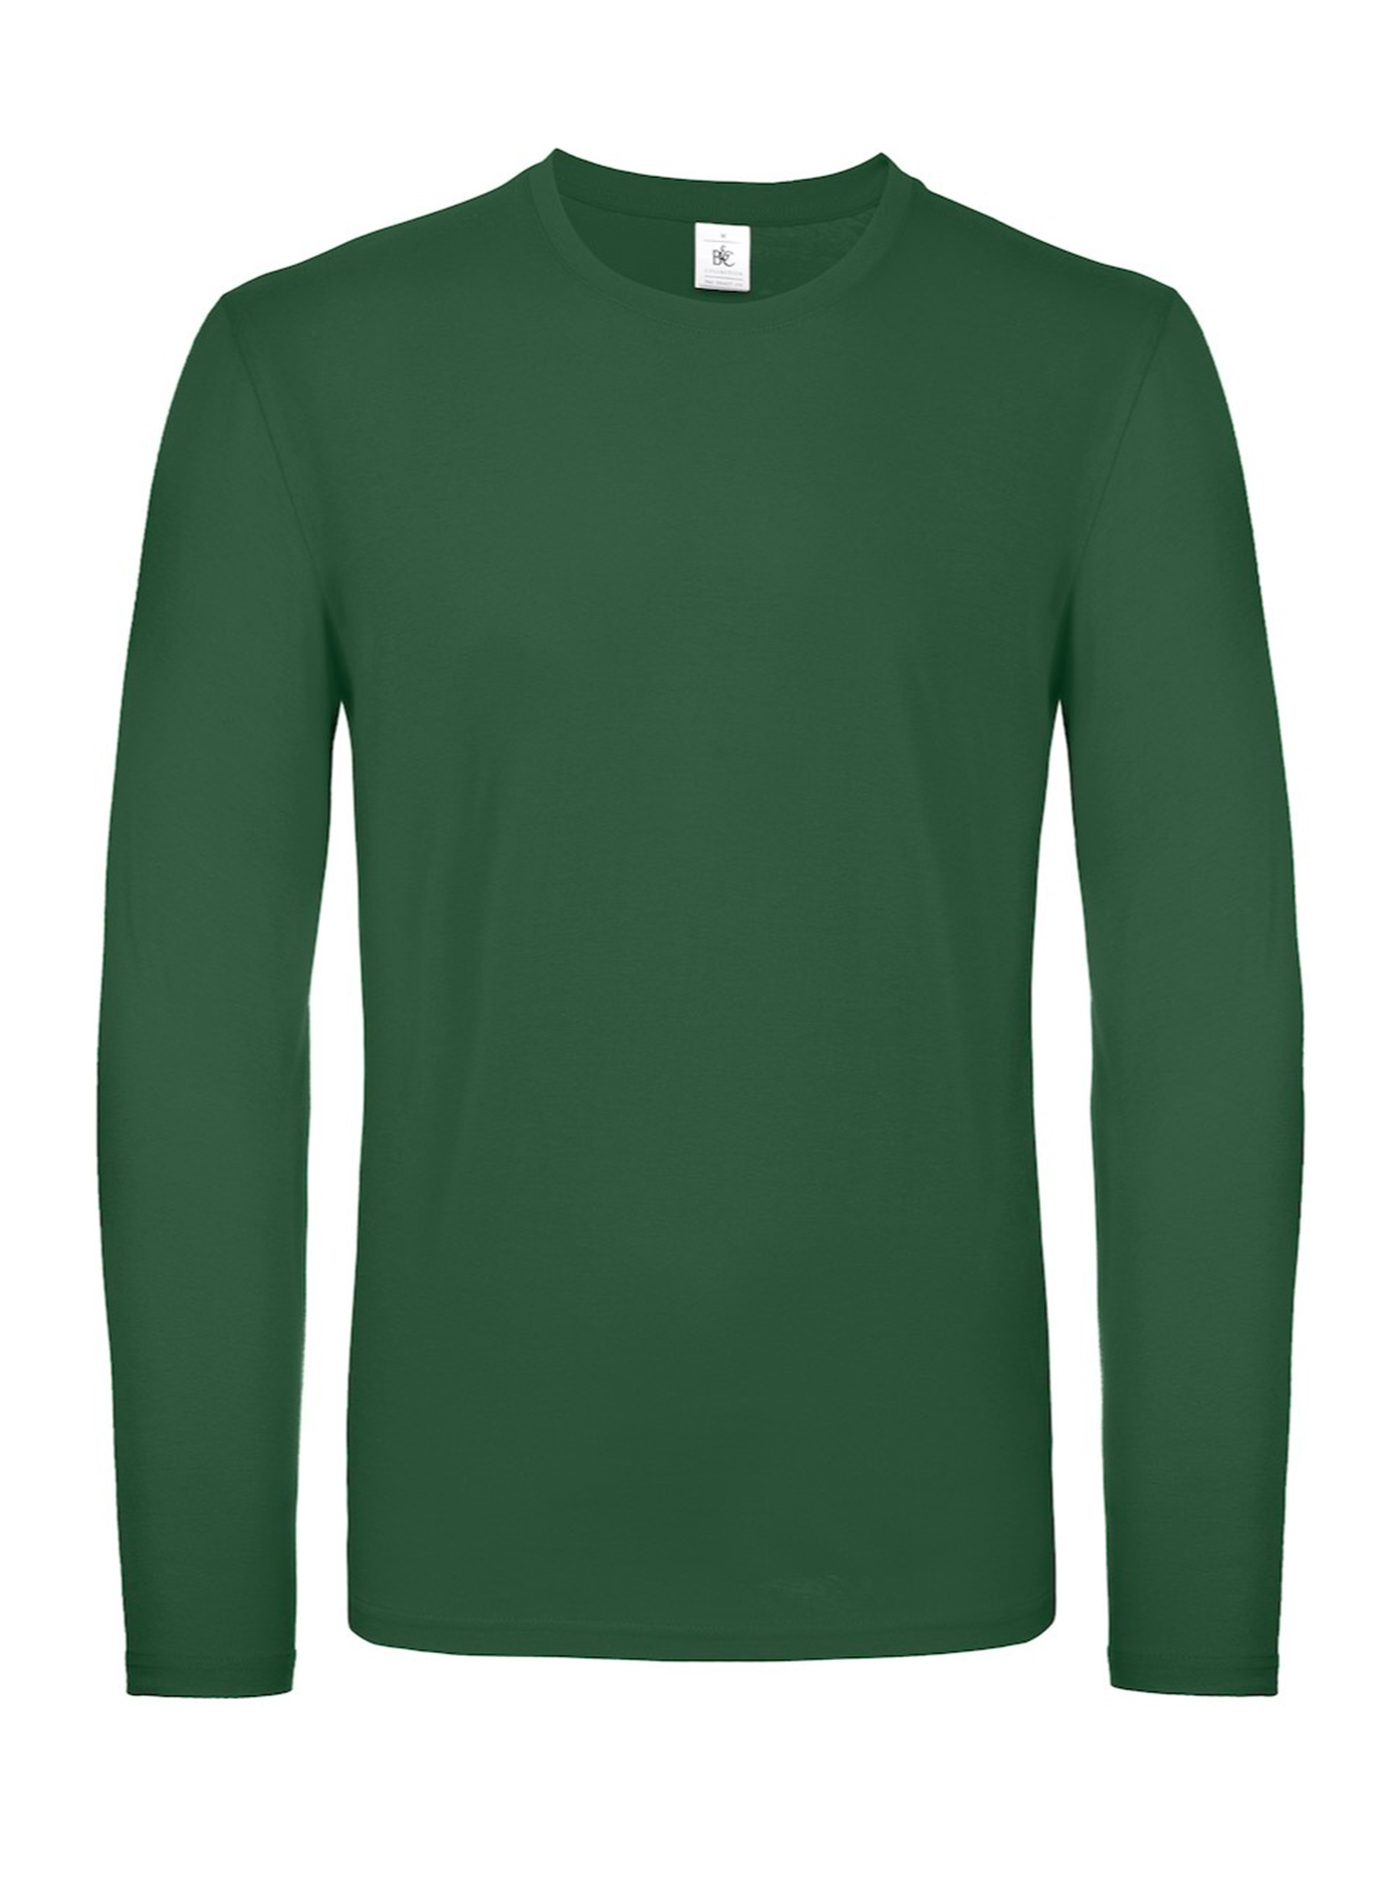 Tričko s dlouhým rukávem B&C Collection - Lahvově zelená L